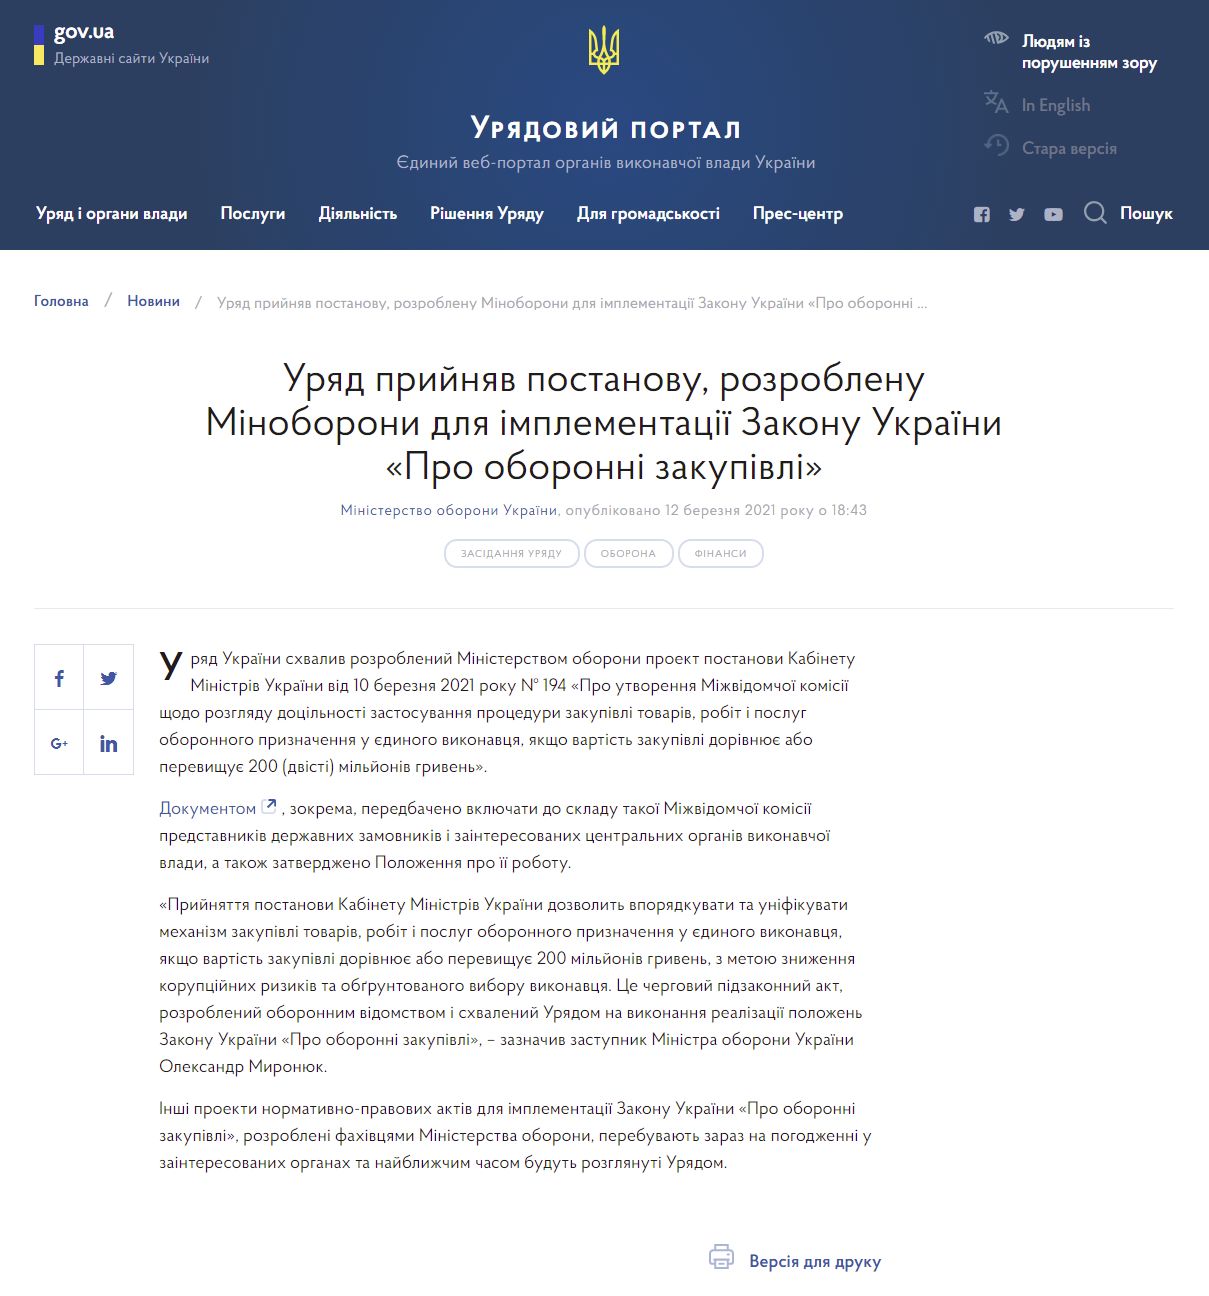 https://www.kmu.gov.ua/news/uryad-prijnyav-postanovu-rozroblenu-minoboroni-dlya-implementaciyi-zakonu-ukrayini-pro-oboronni-zakupivli